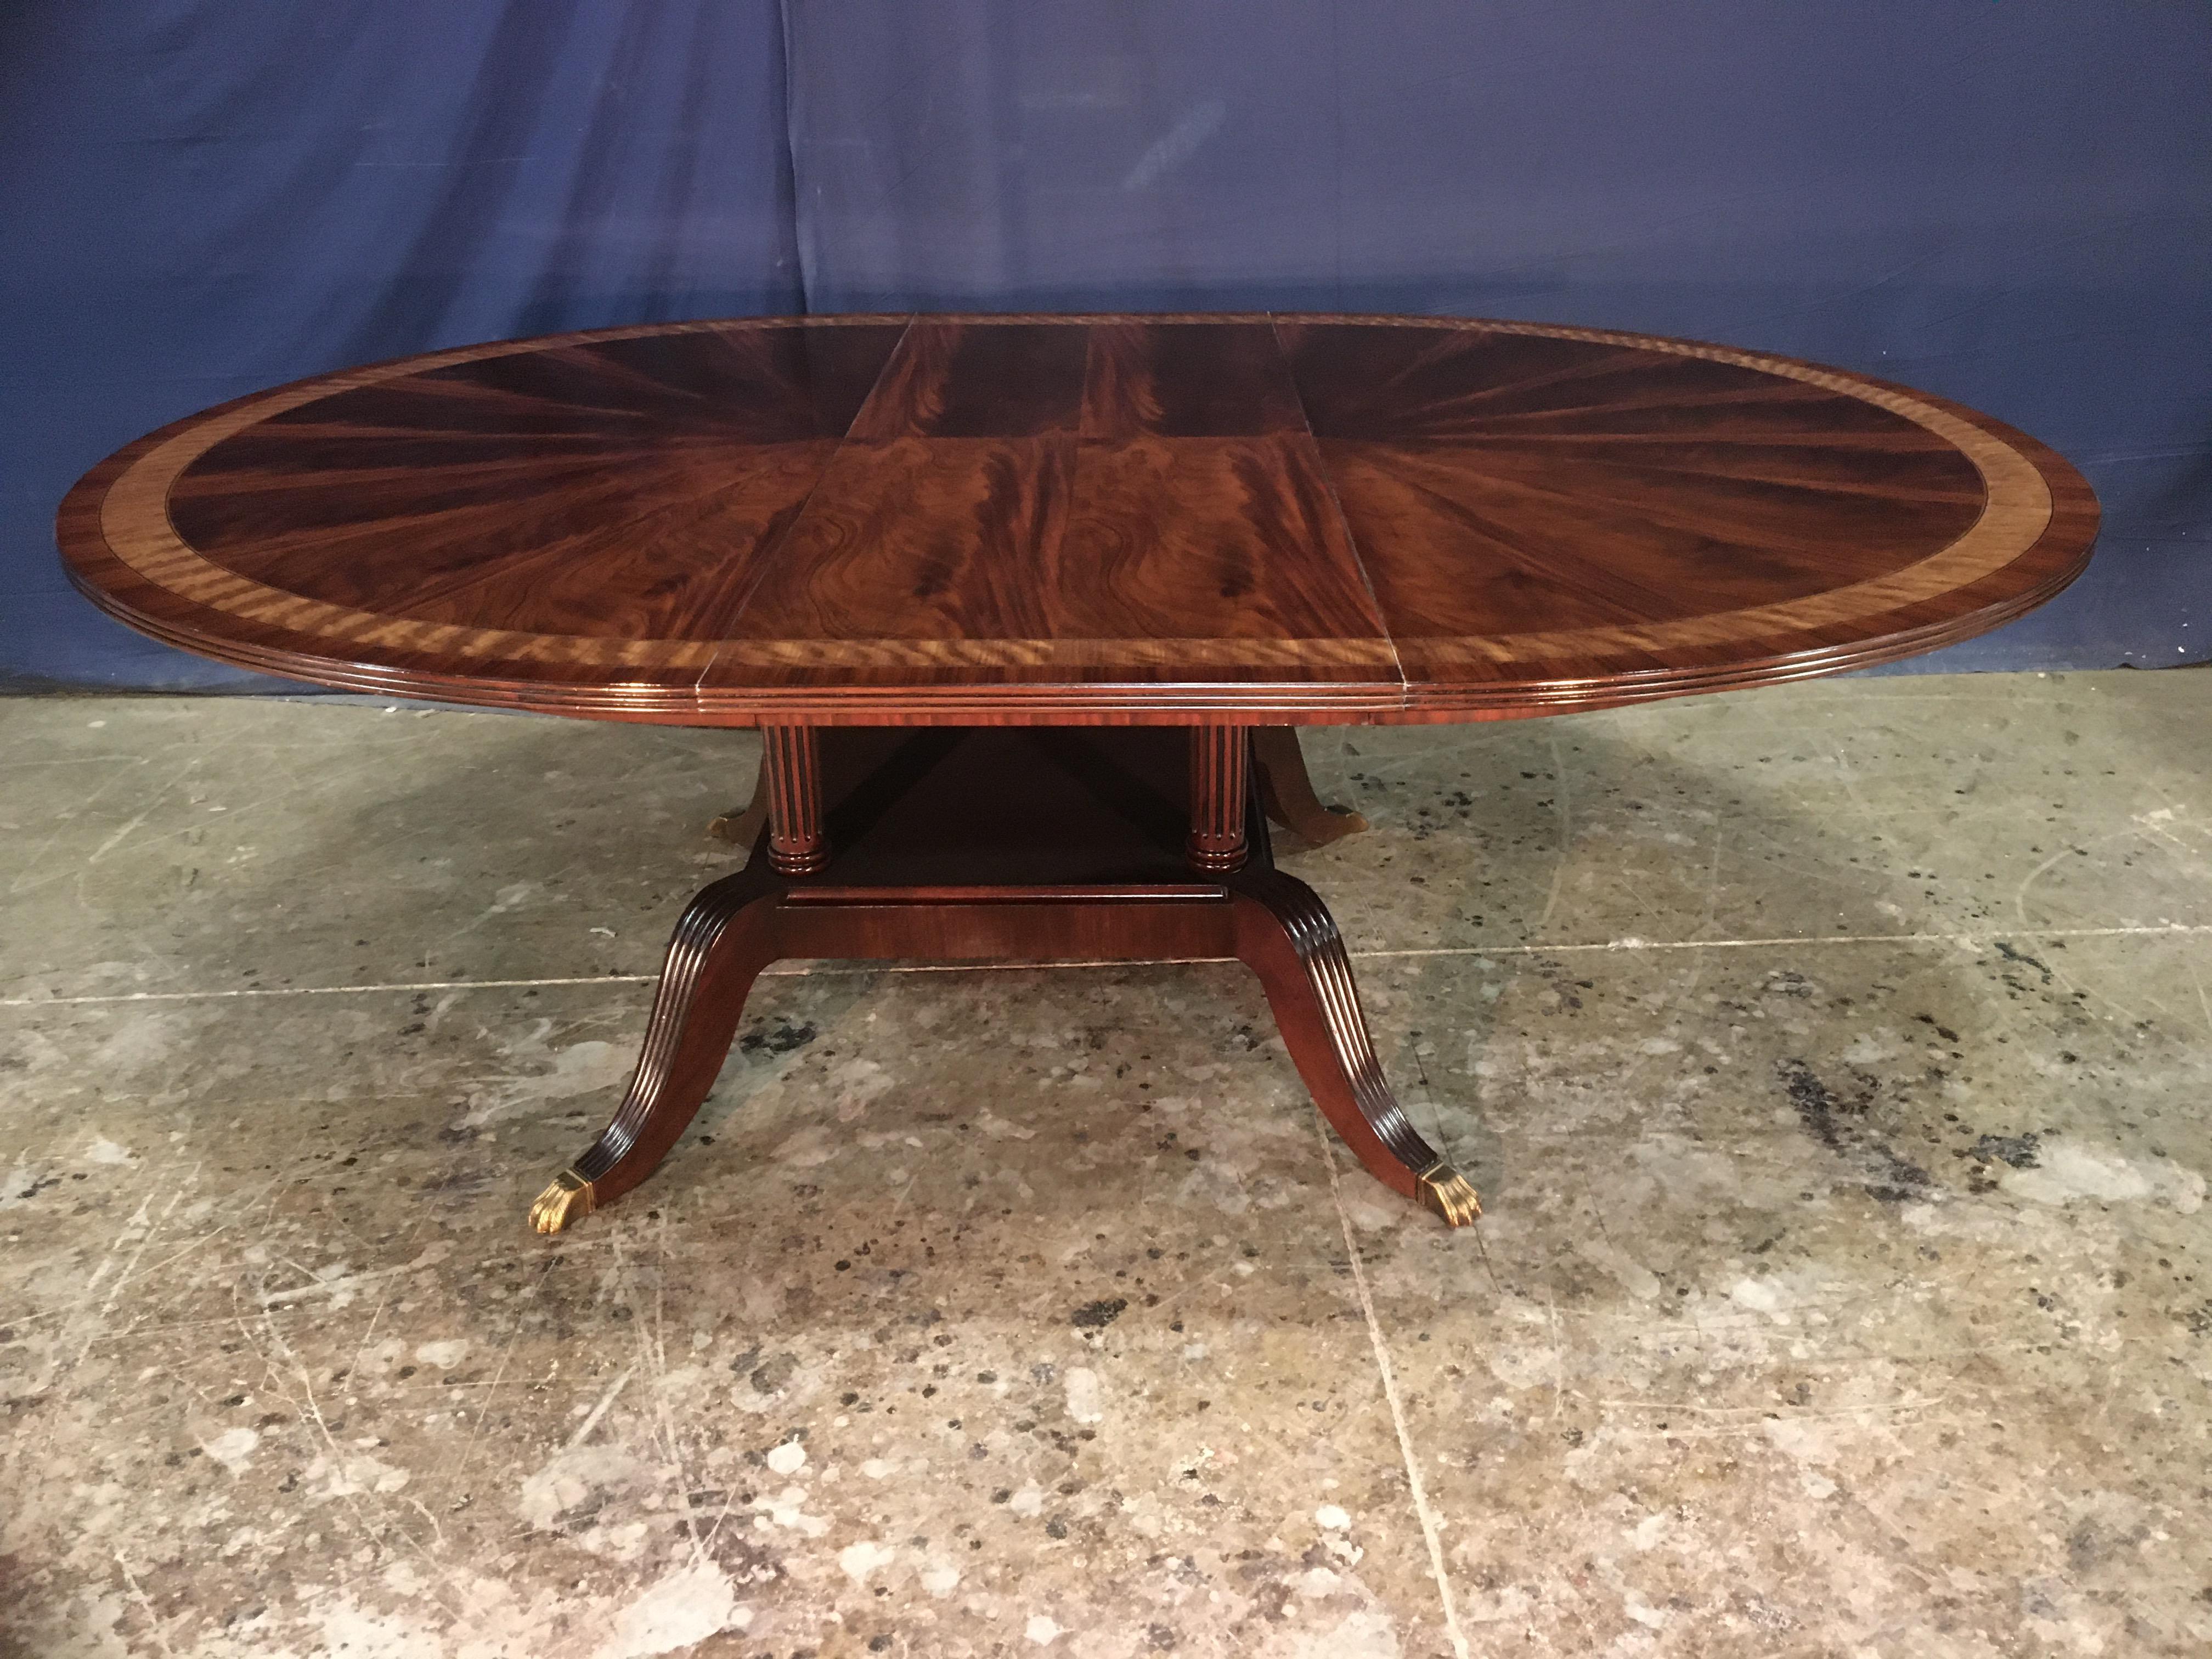 Cette table de salle à manger ronde en acajou traditionnel est fabriquée sur commande dans l'atelier de Leighton Hall. Il présente un champ de coupe radiale en acajou d'Afrique de l'Ouest et deux bordures en bois de satin et en pau ferro.  La table